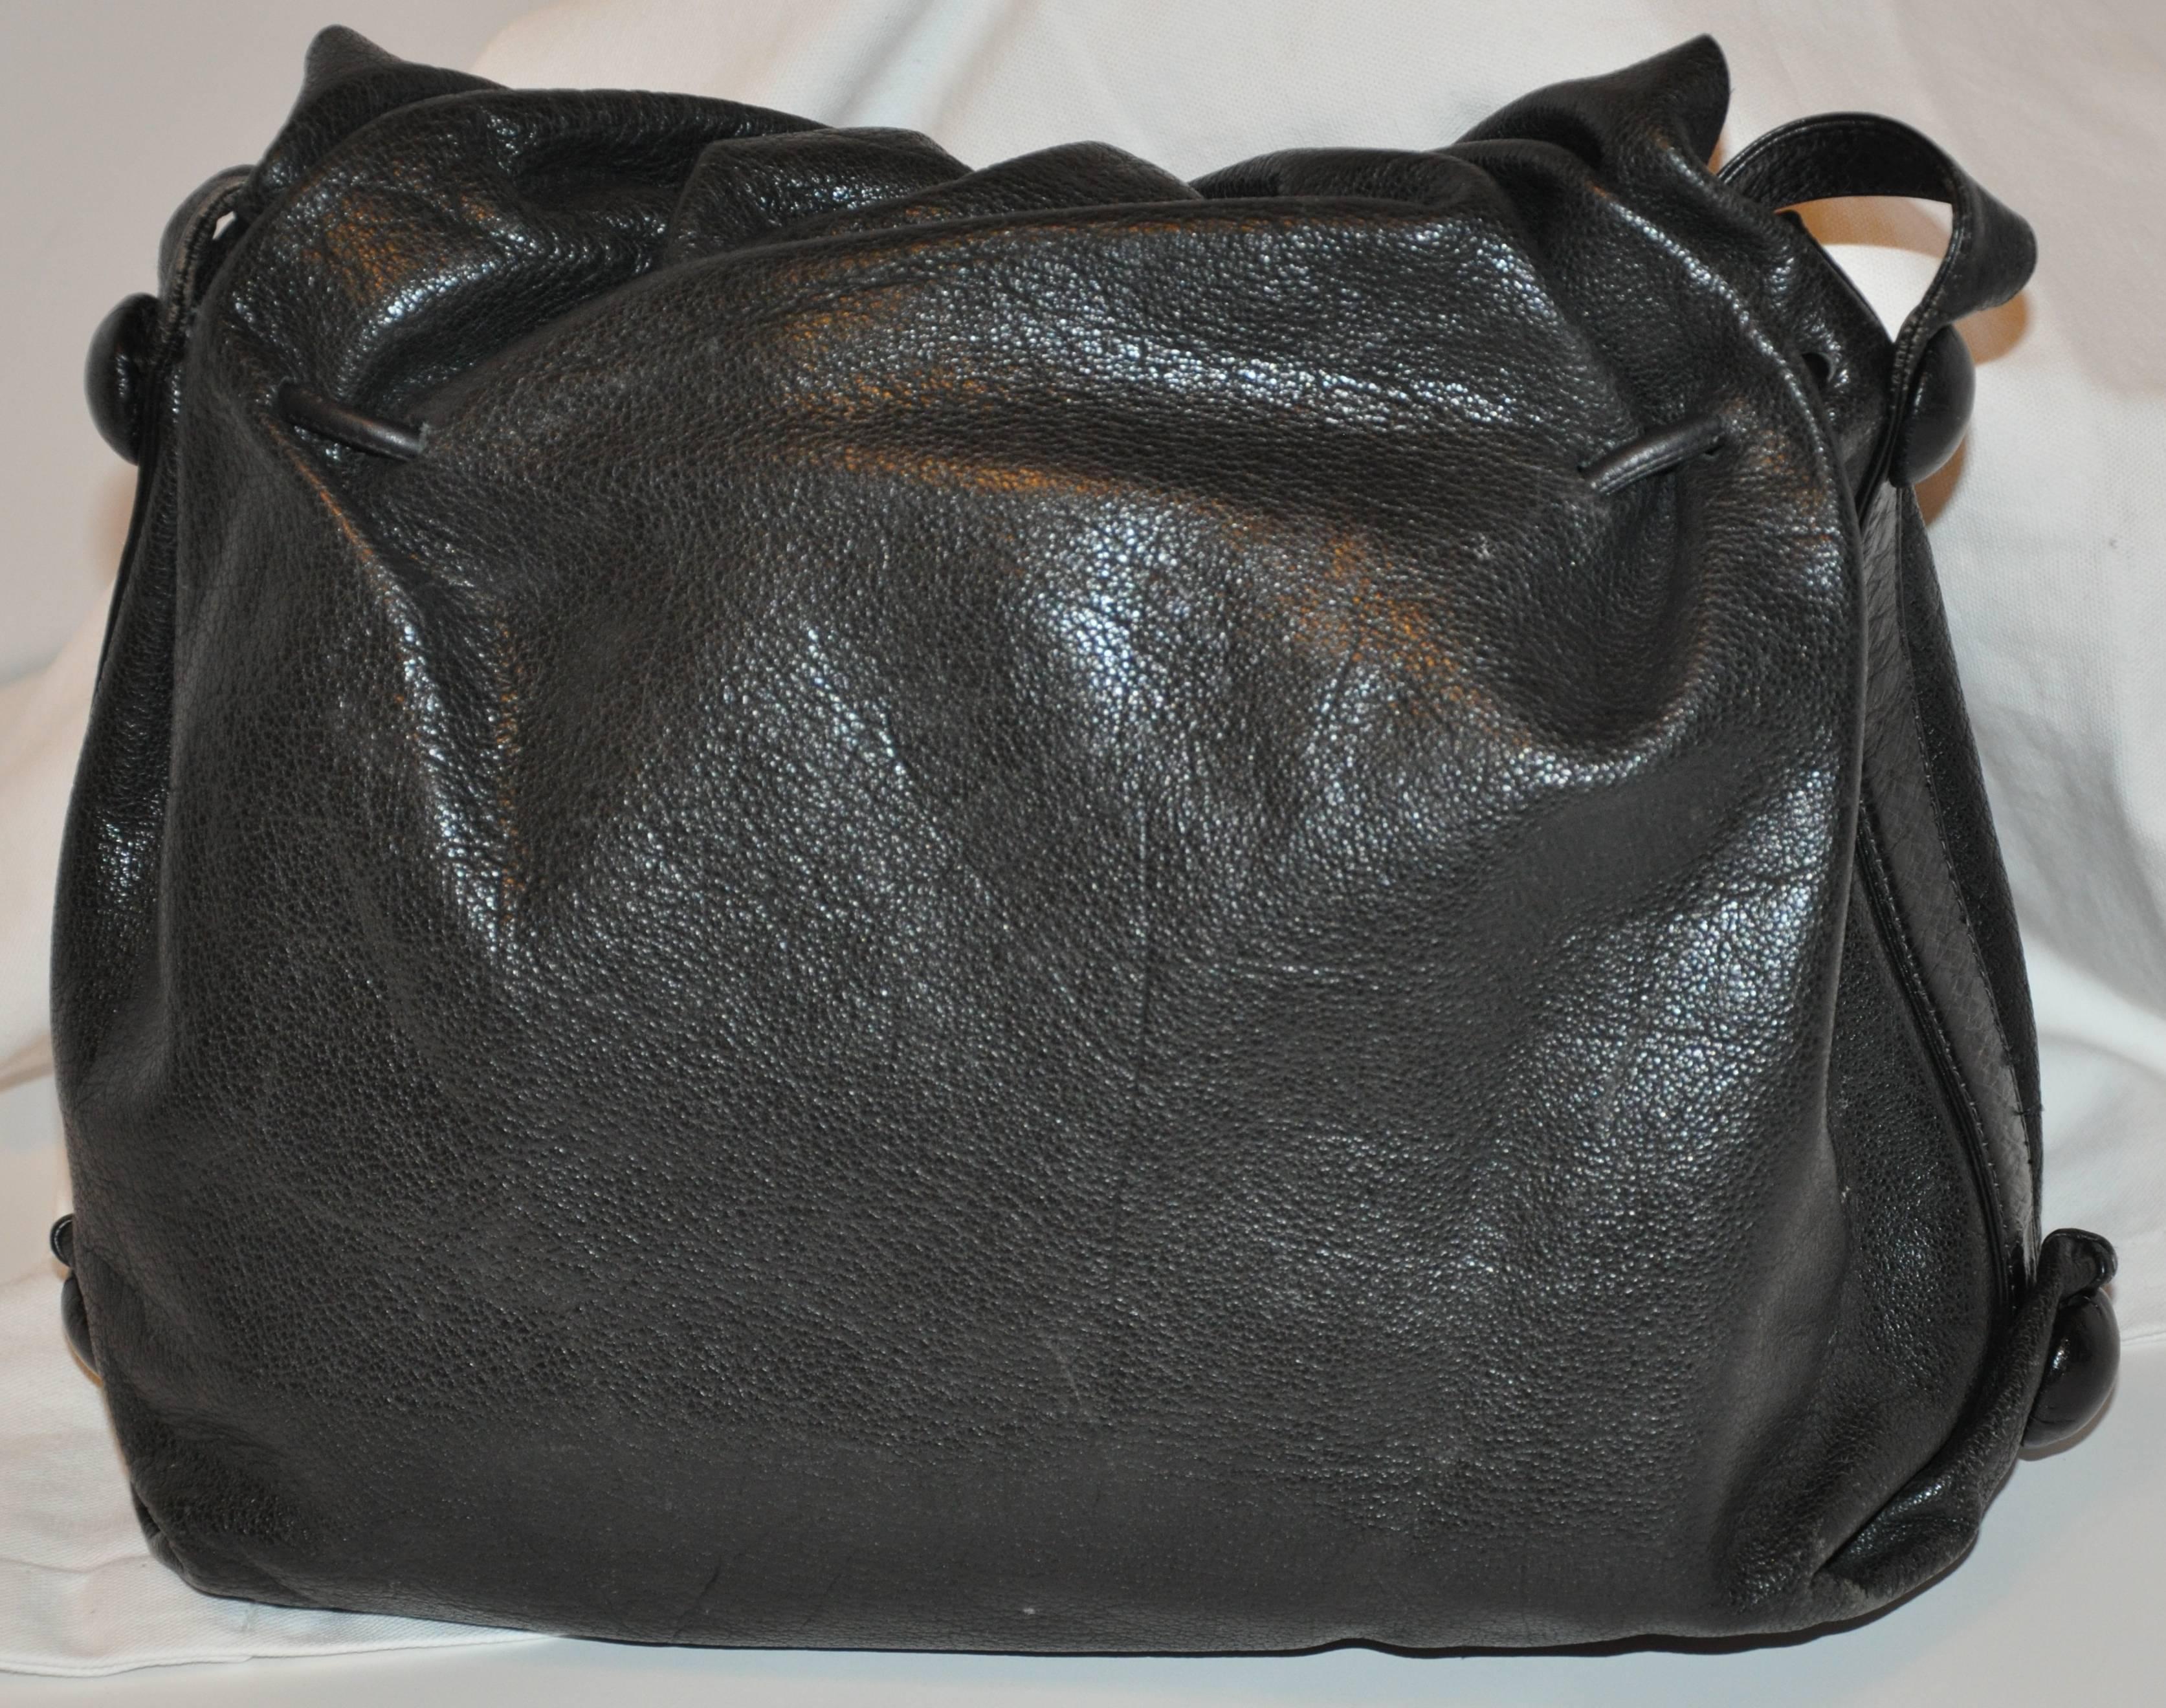        Le merveilleux sac à bandoulière en peau de buffle noir texturé signé Carlos Falchi est orné de ses célèbres patchs gravés à la main sur le rabat avant. Le rabat avant mesure 11 pouces de long. Les bretelles mesurent 1 pouce de largeur et ont